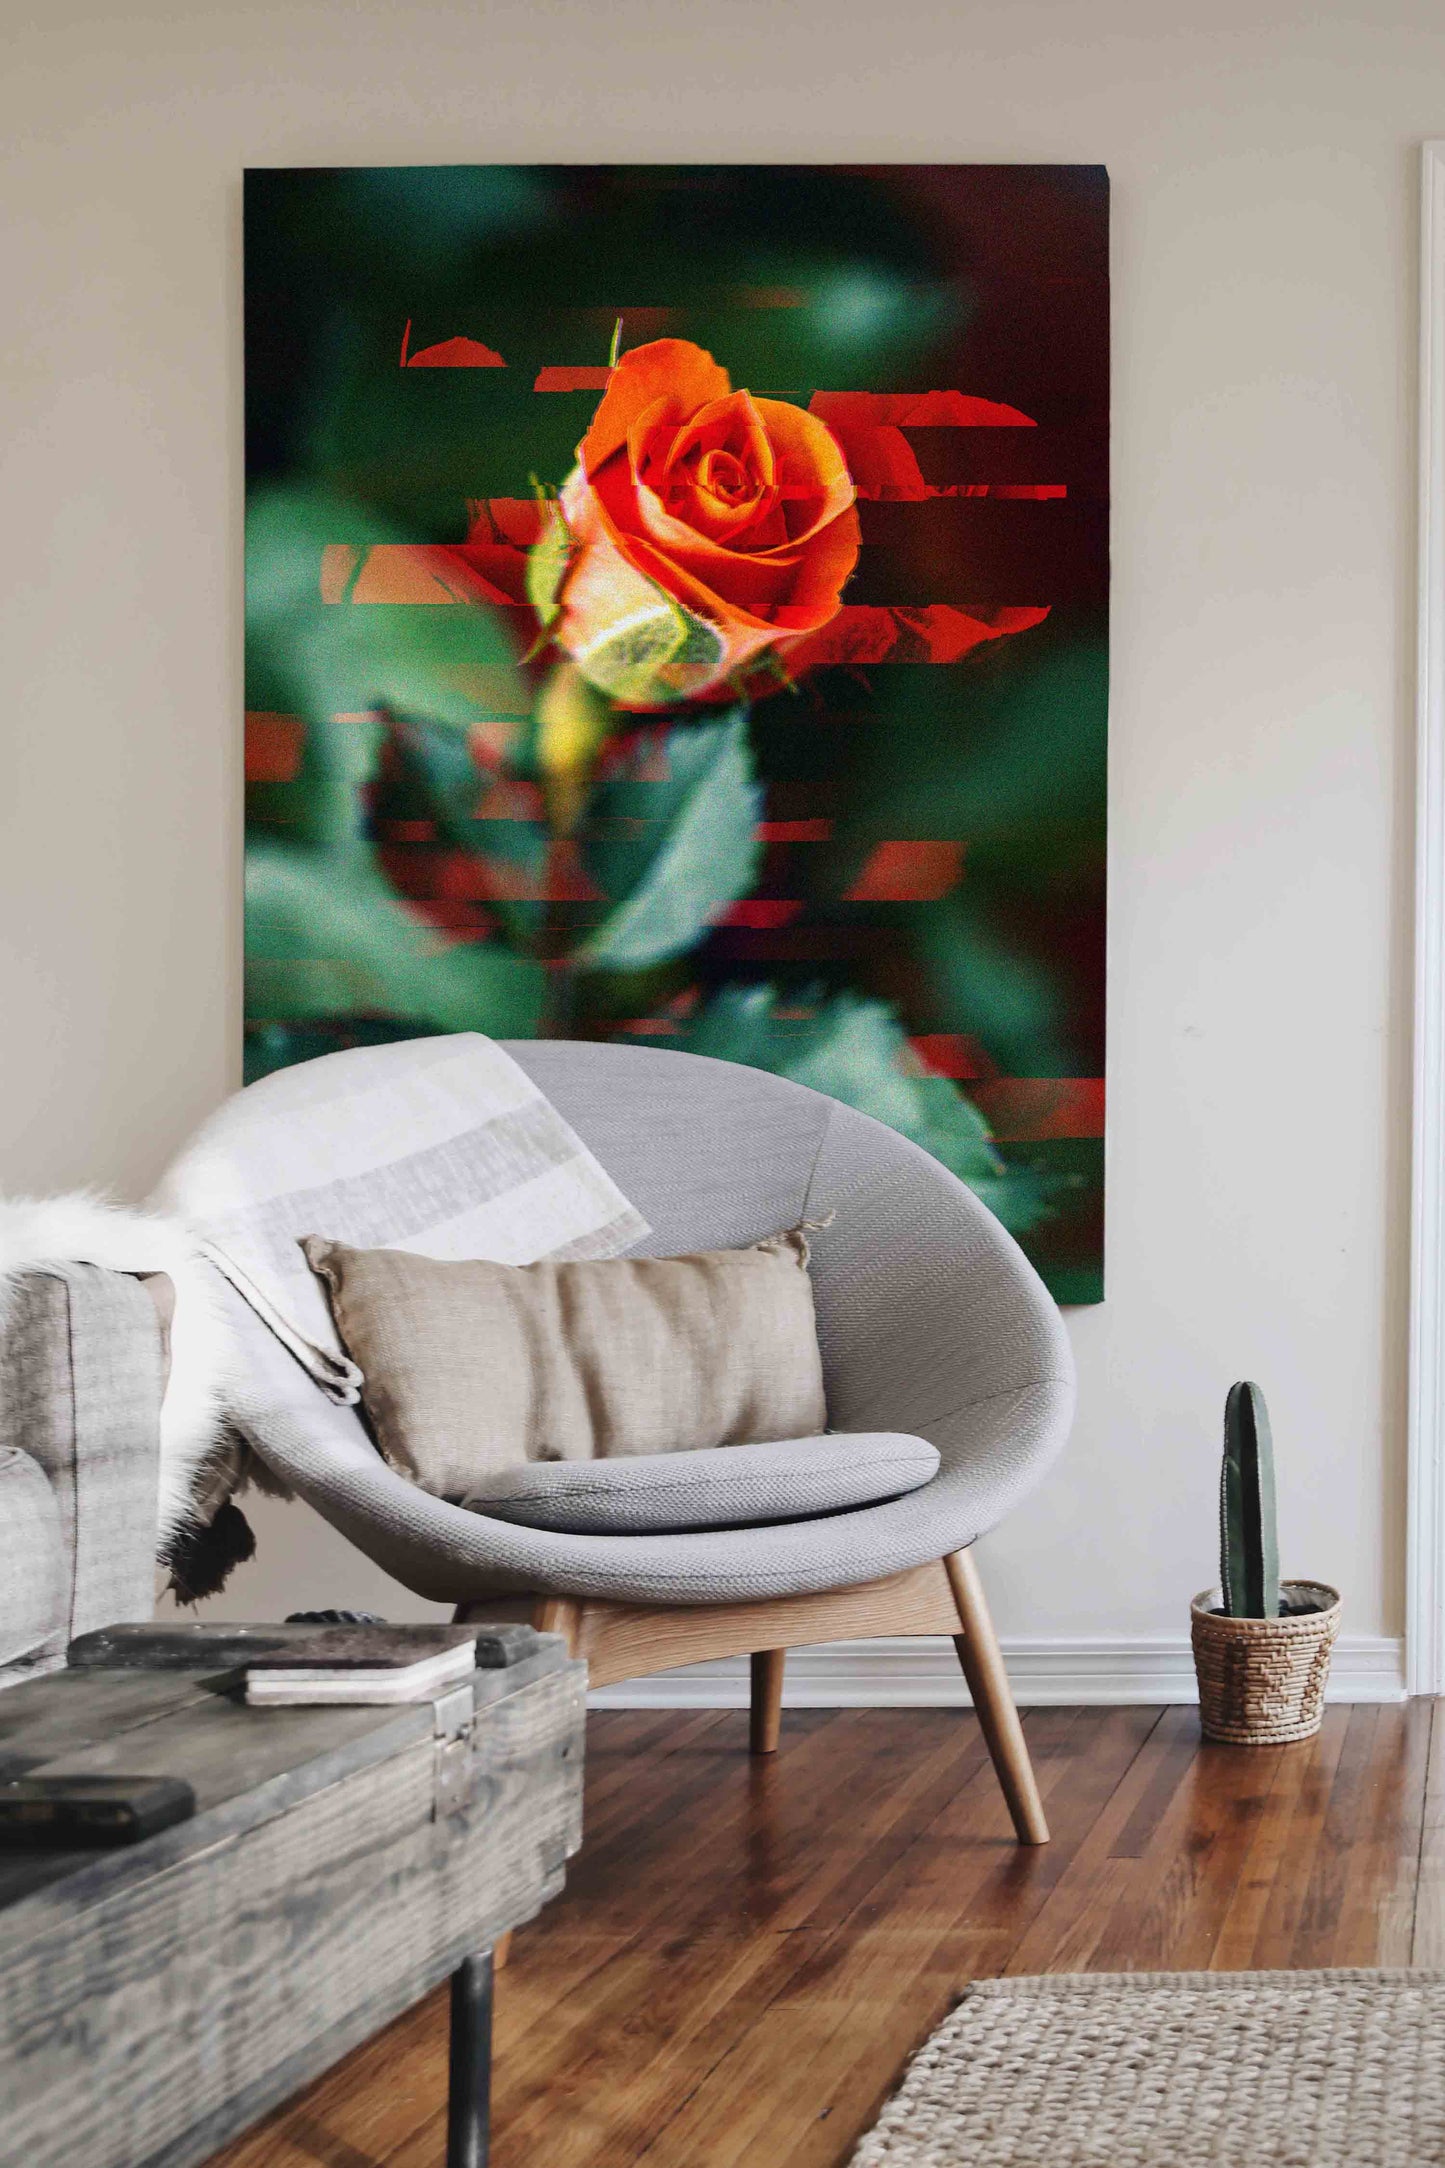 
                  
                    Rose flower digital art In Room View
                  
                